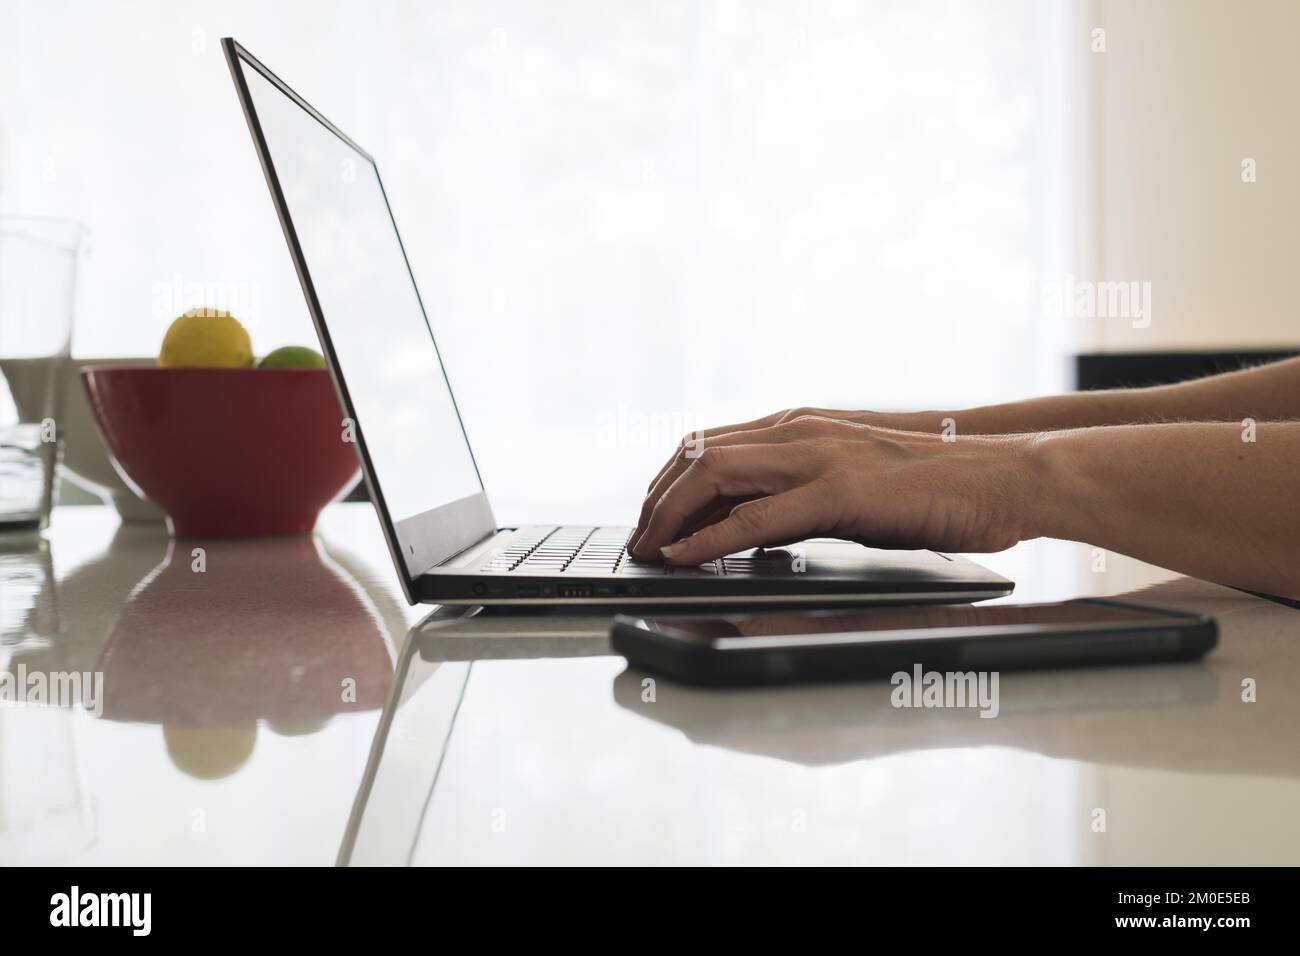 Gros plan des mains de femmes tapant sur le clavier d'un ordinateur portable moderne avec téléphone mobile à côté d'elle. Femme utilisateur d'ordinateur sur ordinateur portable au banc de cuisine. Banque D'Images